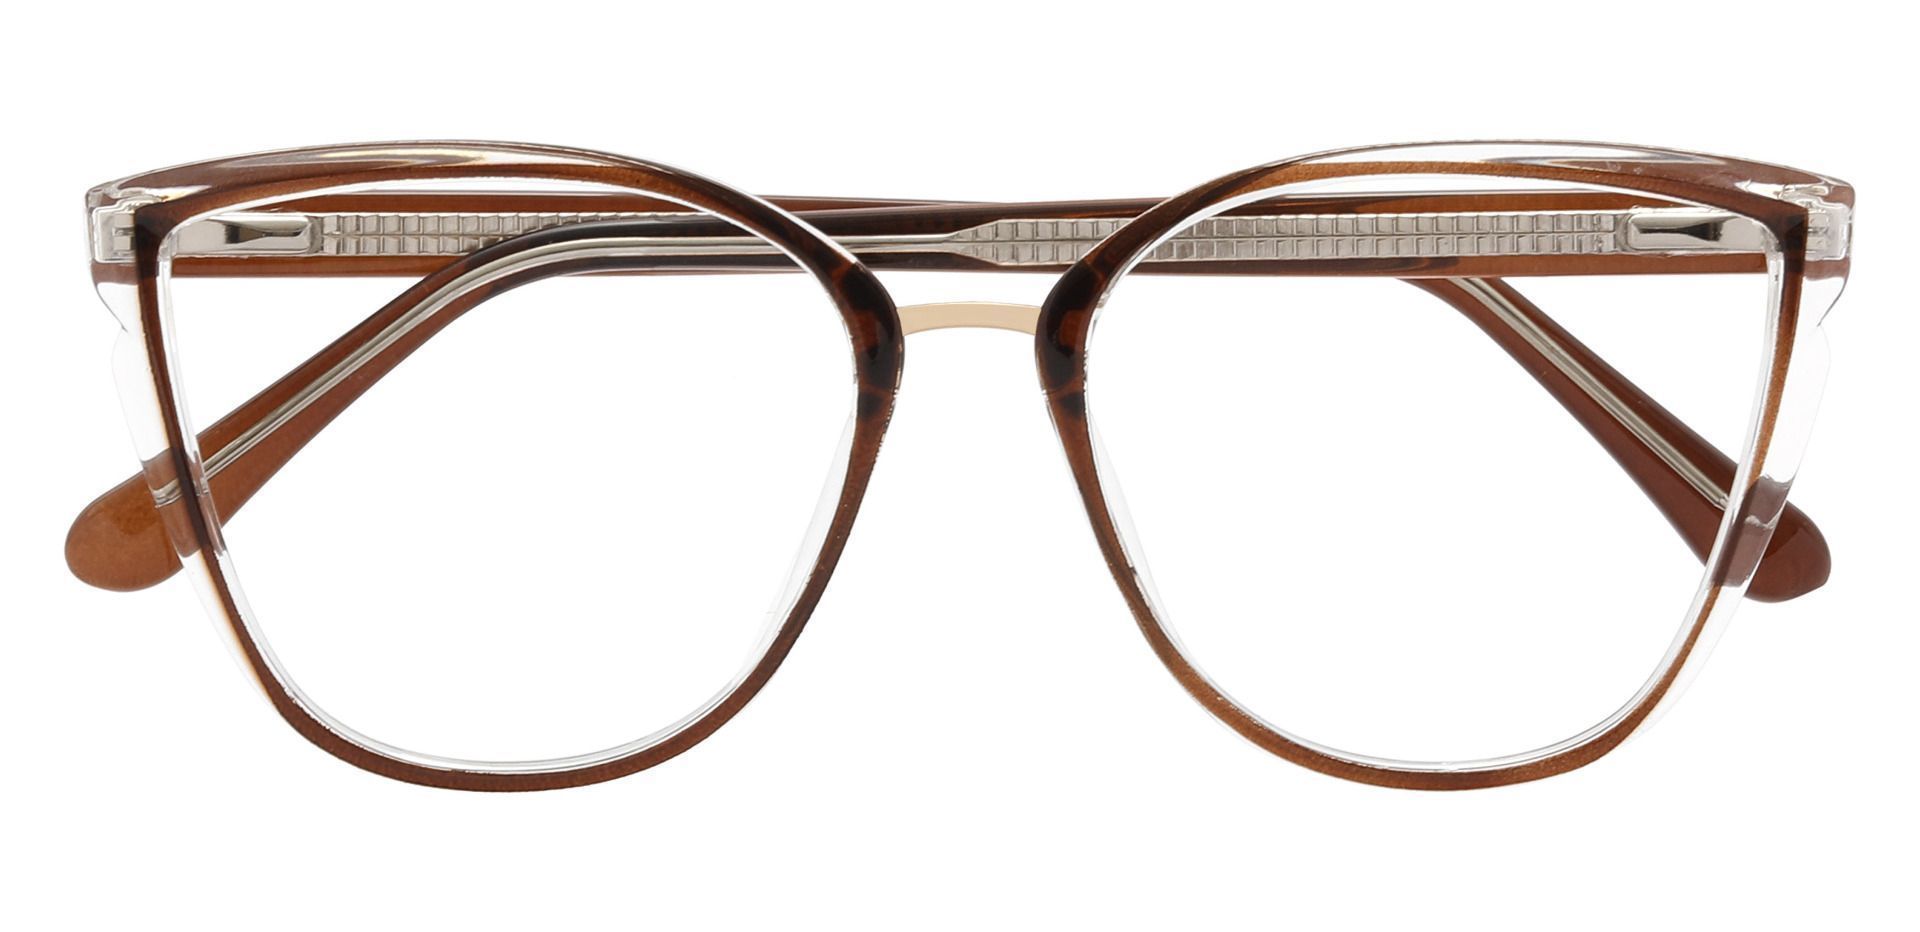 Shyla Cat Eye Prescription Glasses - Brown